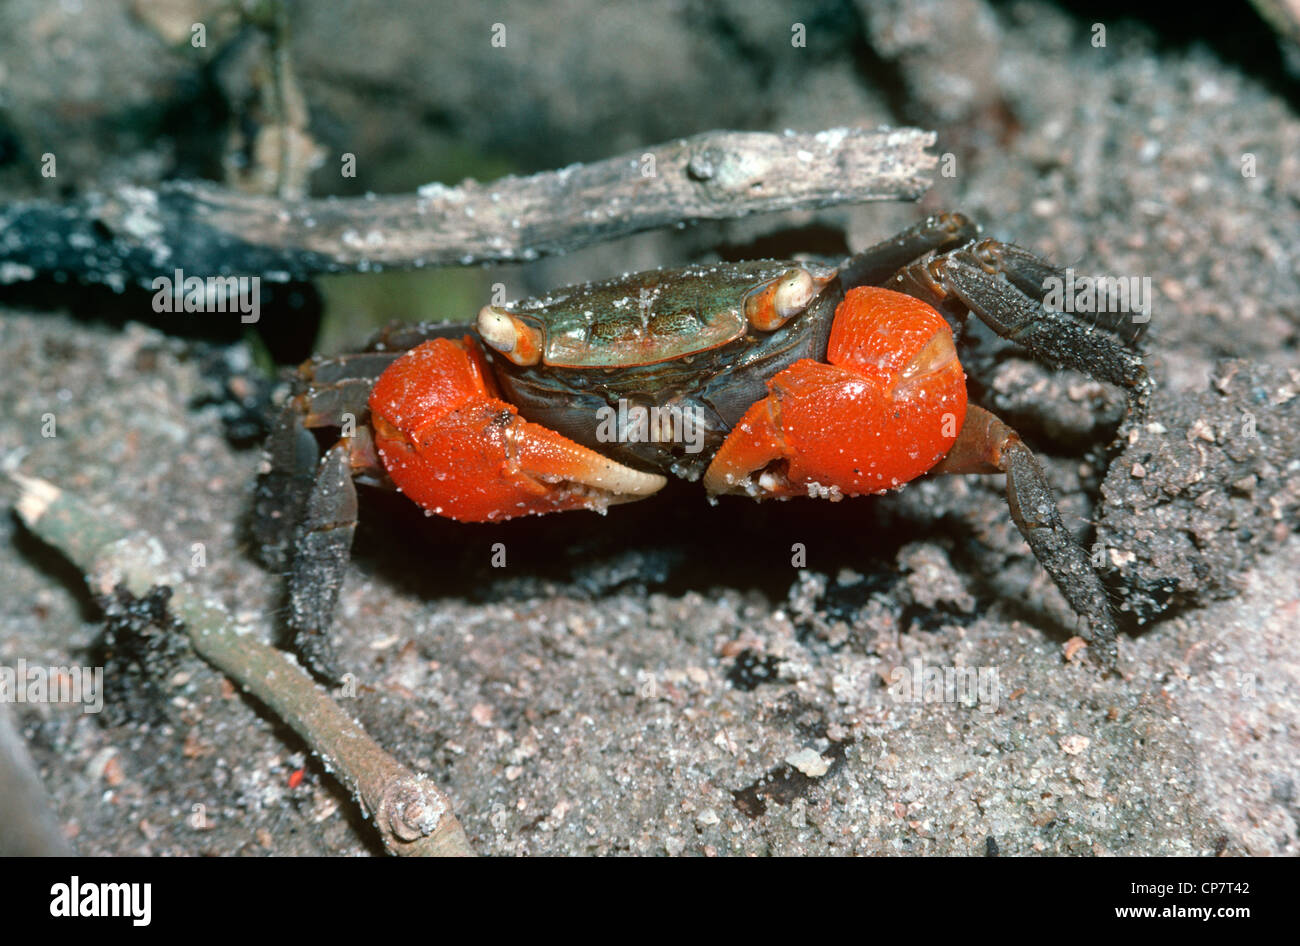 Mangrove or marsh crab (Sesarma sp.: Grapsidae) Kenya Stock Photo